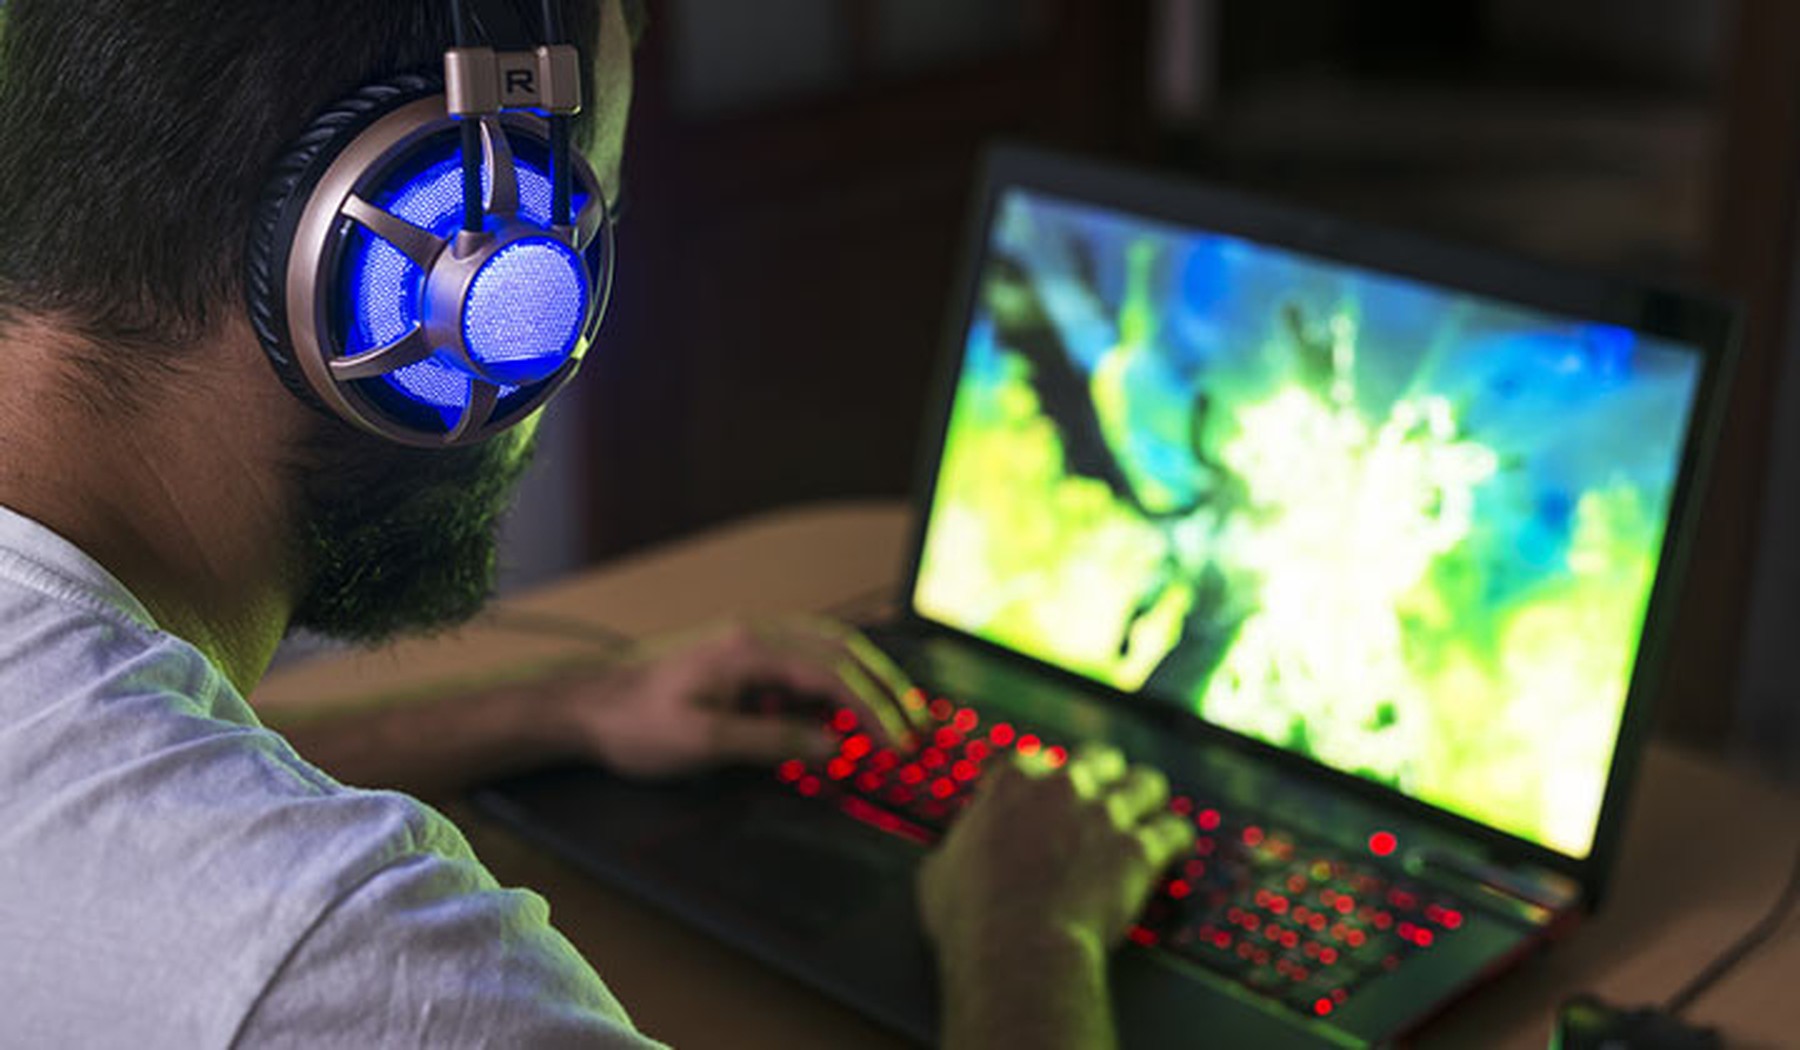 portátil de gaming con las teclas iluminadas en rojo y un vídeojuego en pantalla. Usándolo hay un hombre joven con barba y unos cascos iluminados en azul